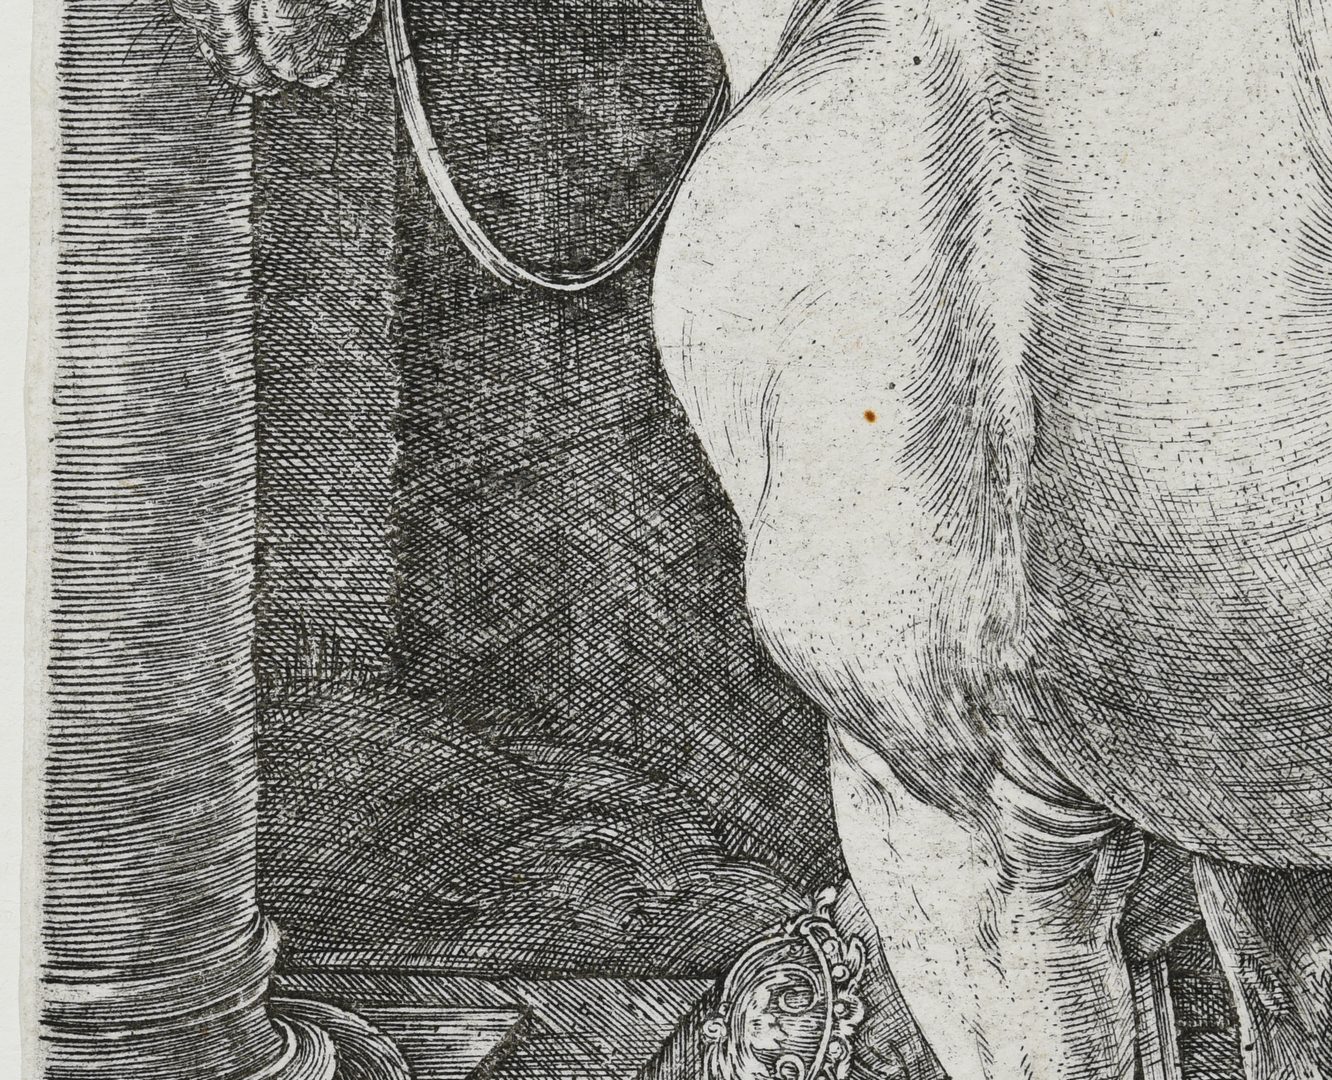 Lot 357: Albrecht Durer "The Large Horse" engraving